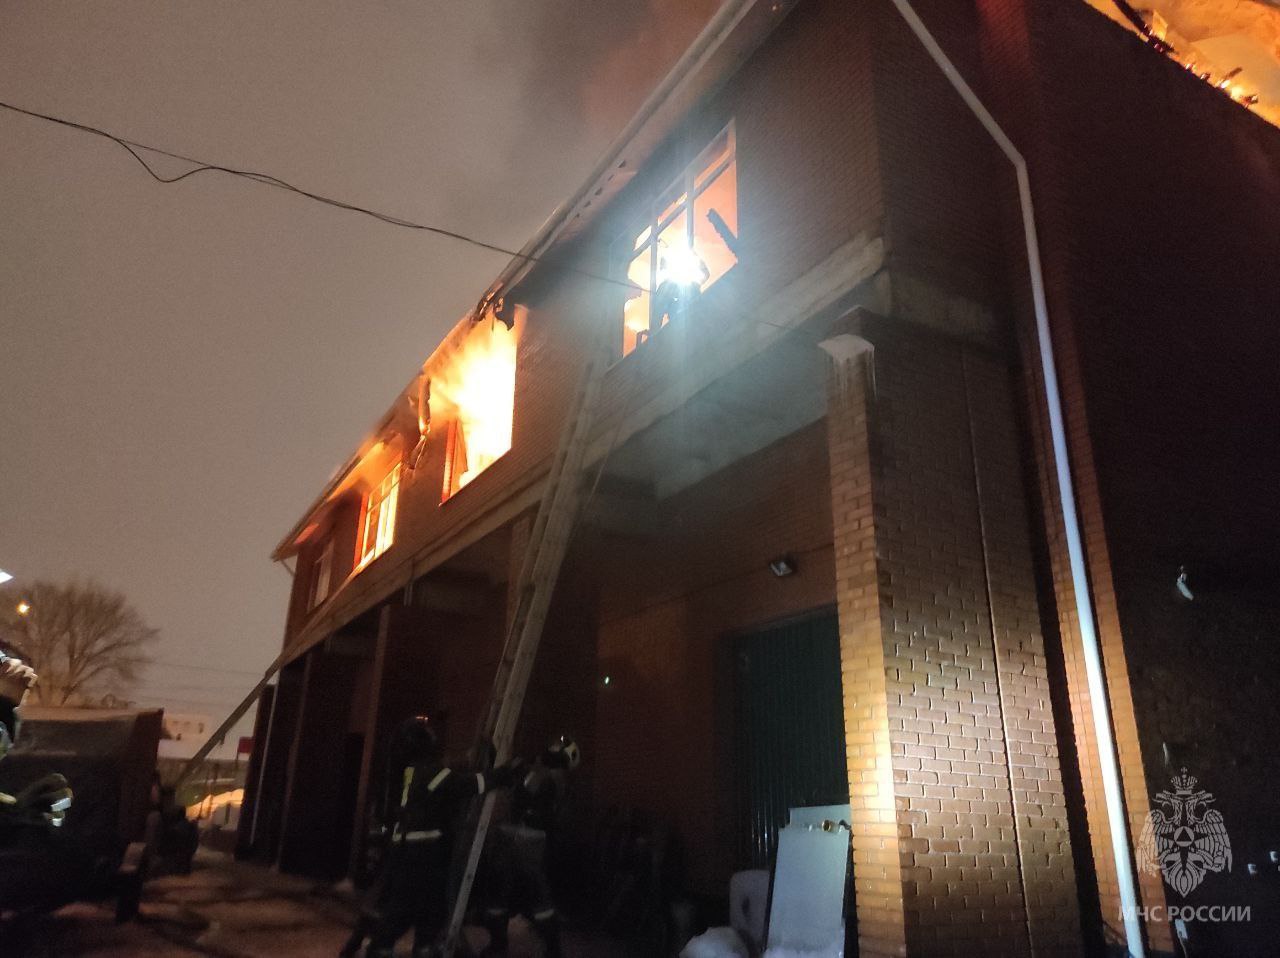  Жилой дом с автосервисом загорелся на улице Азина в Ижевске